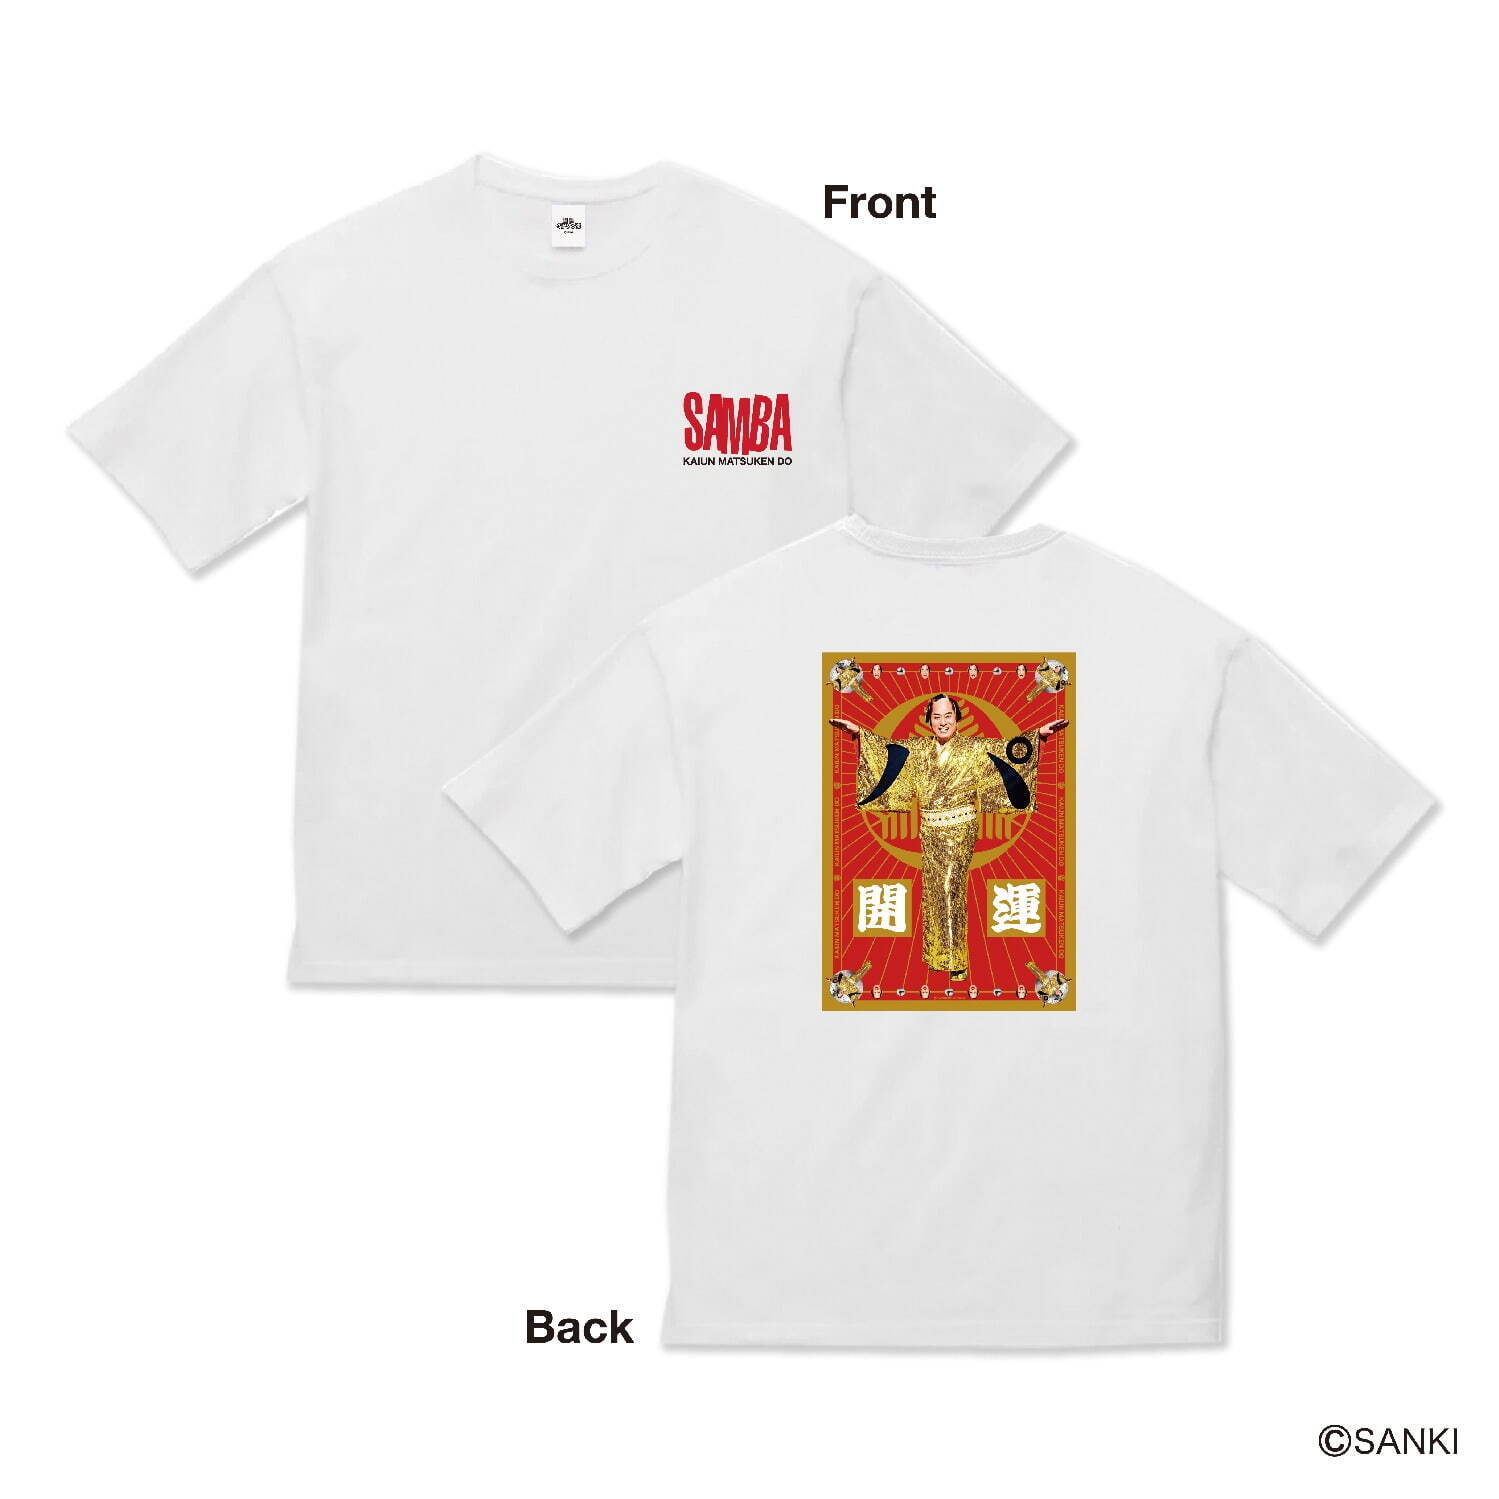 ・開運Tシャツ(白、黒) M、L、XL 各3,850円